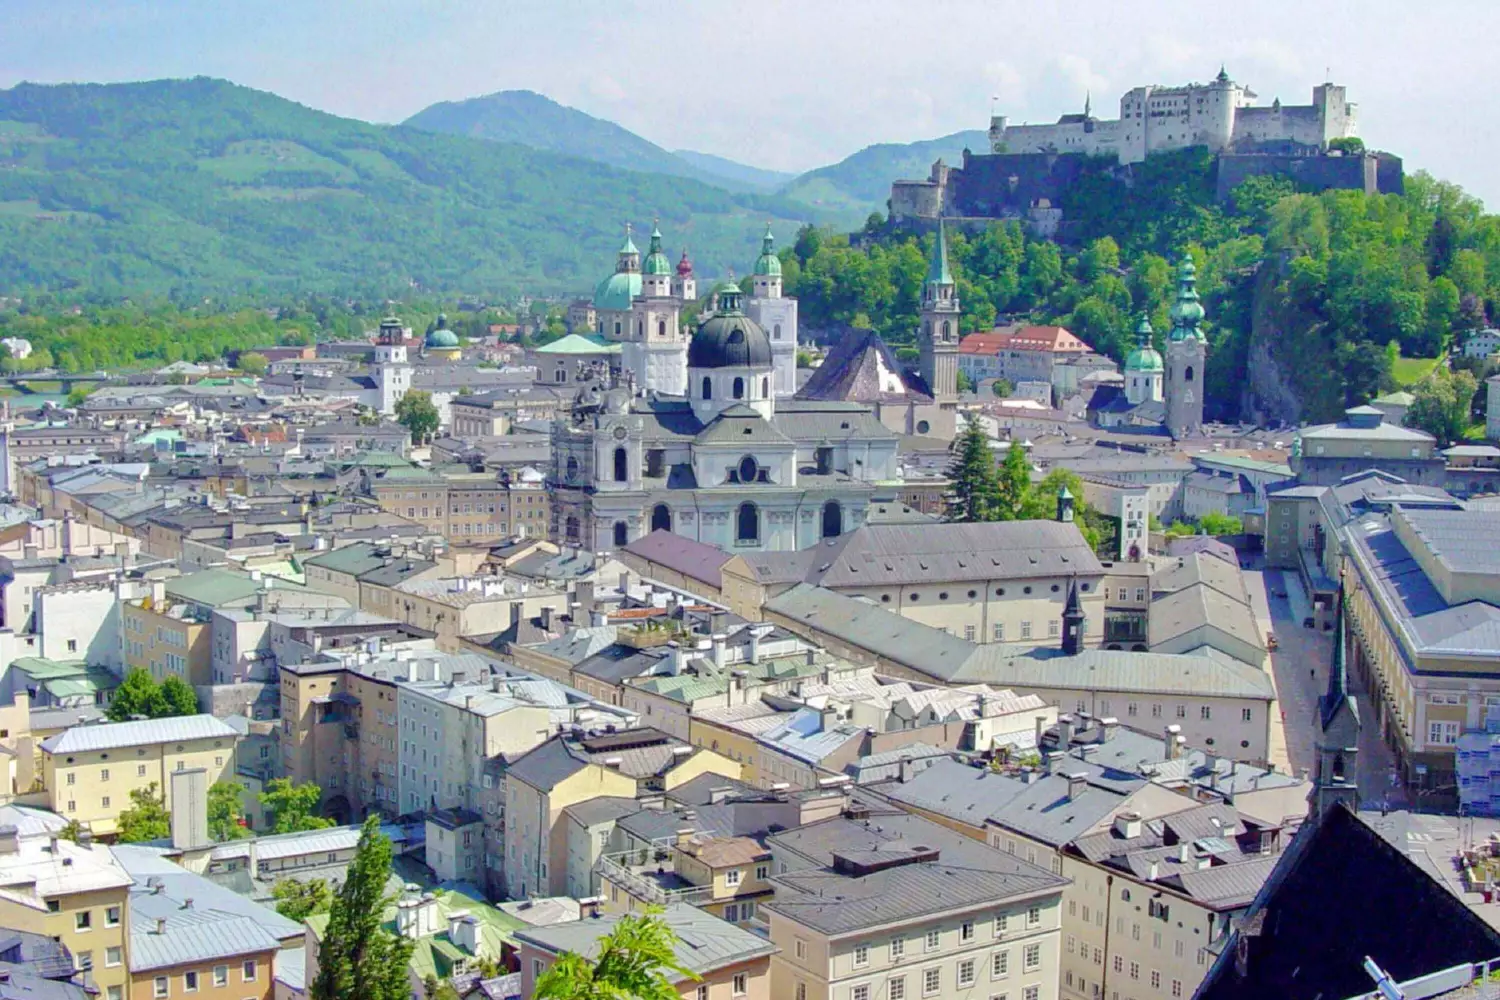 Kultur Burgen Schlösser Festspiele Salzburg